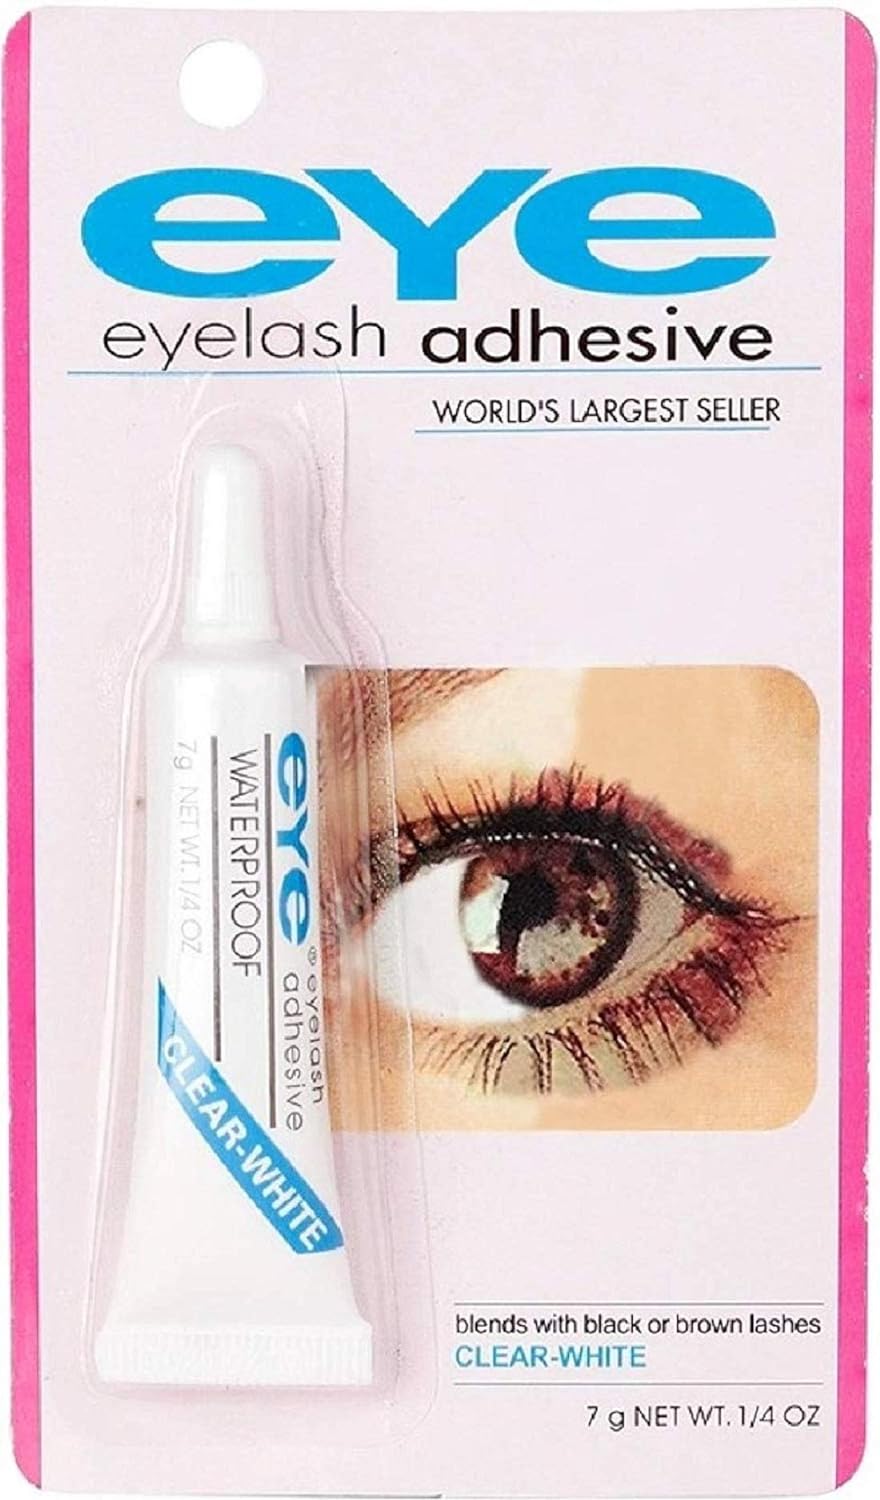 Eyelash Adhesive by Prokare